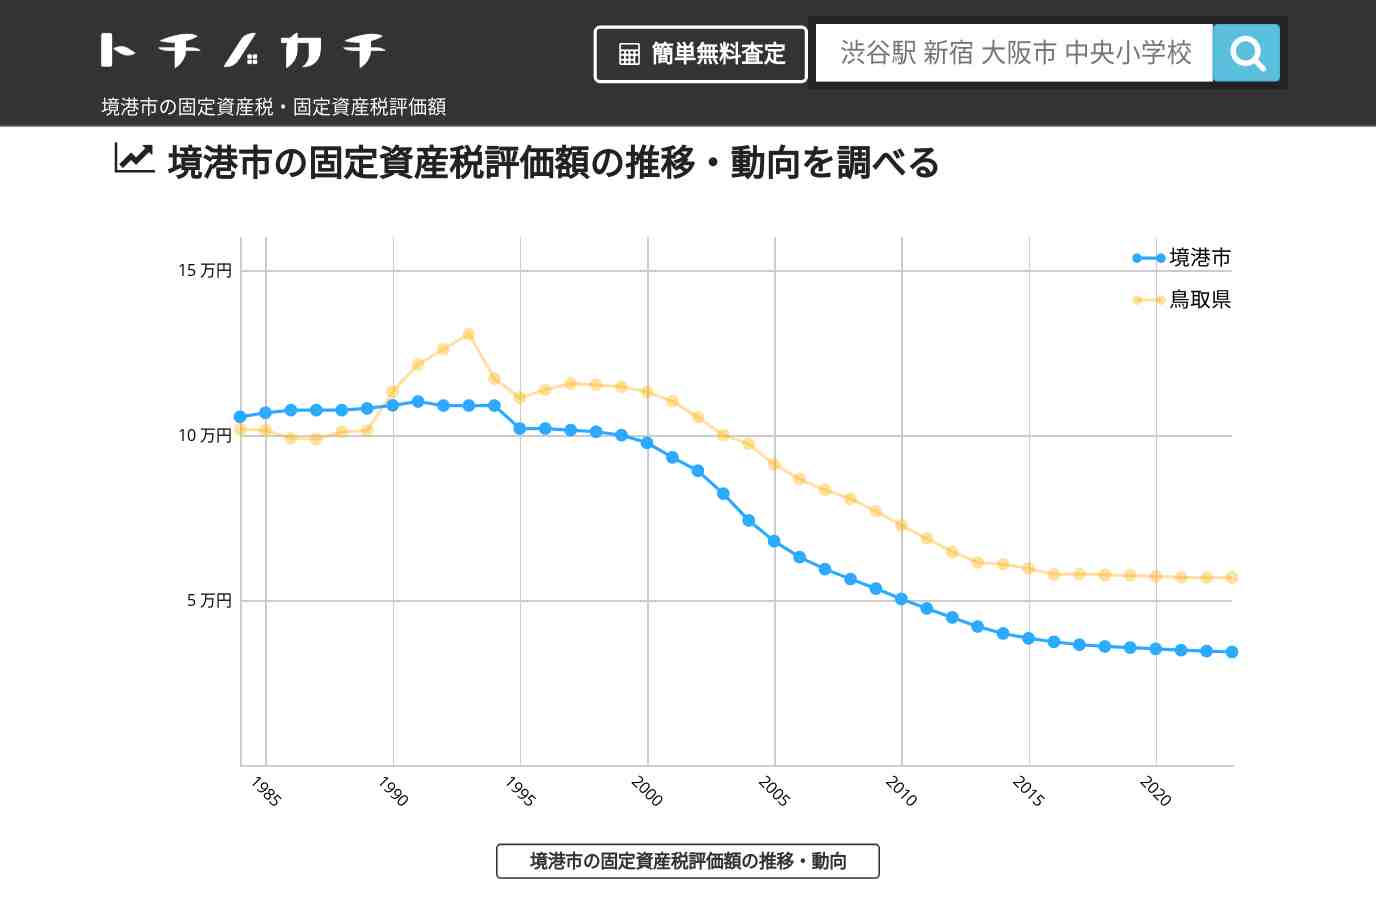 余子小学校(鳥取県 境港市)周辺の固定資産税・固定資産税評価額 | トチノカチ